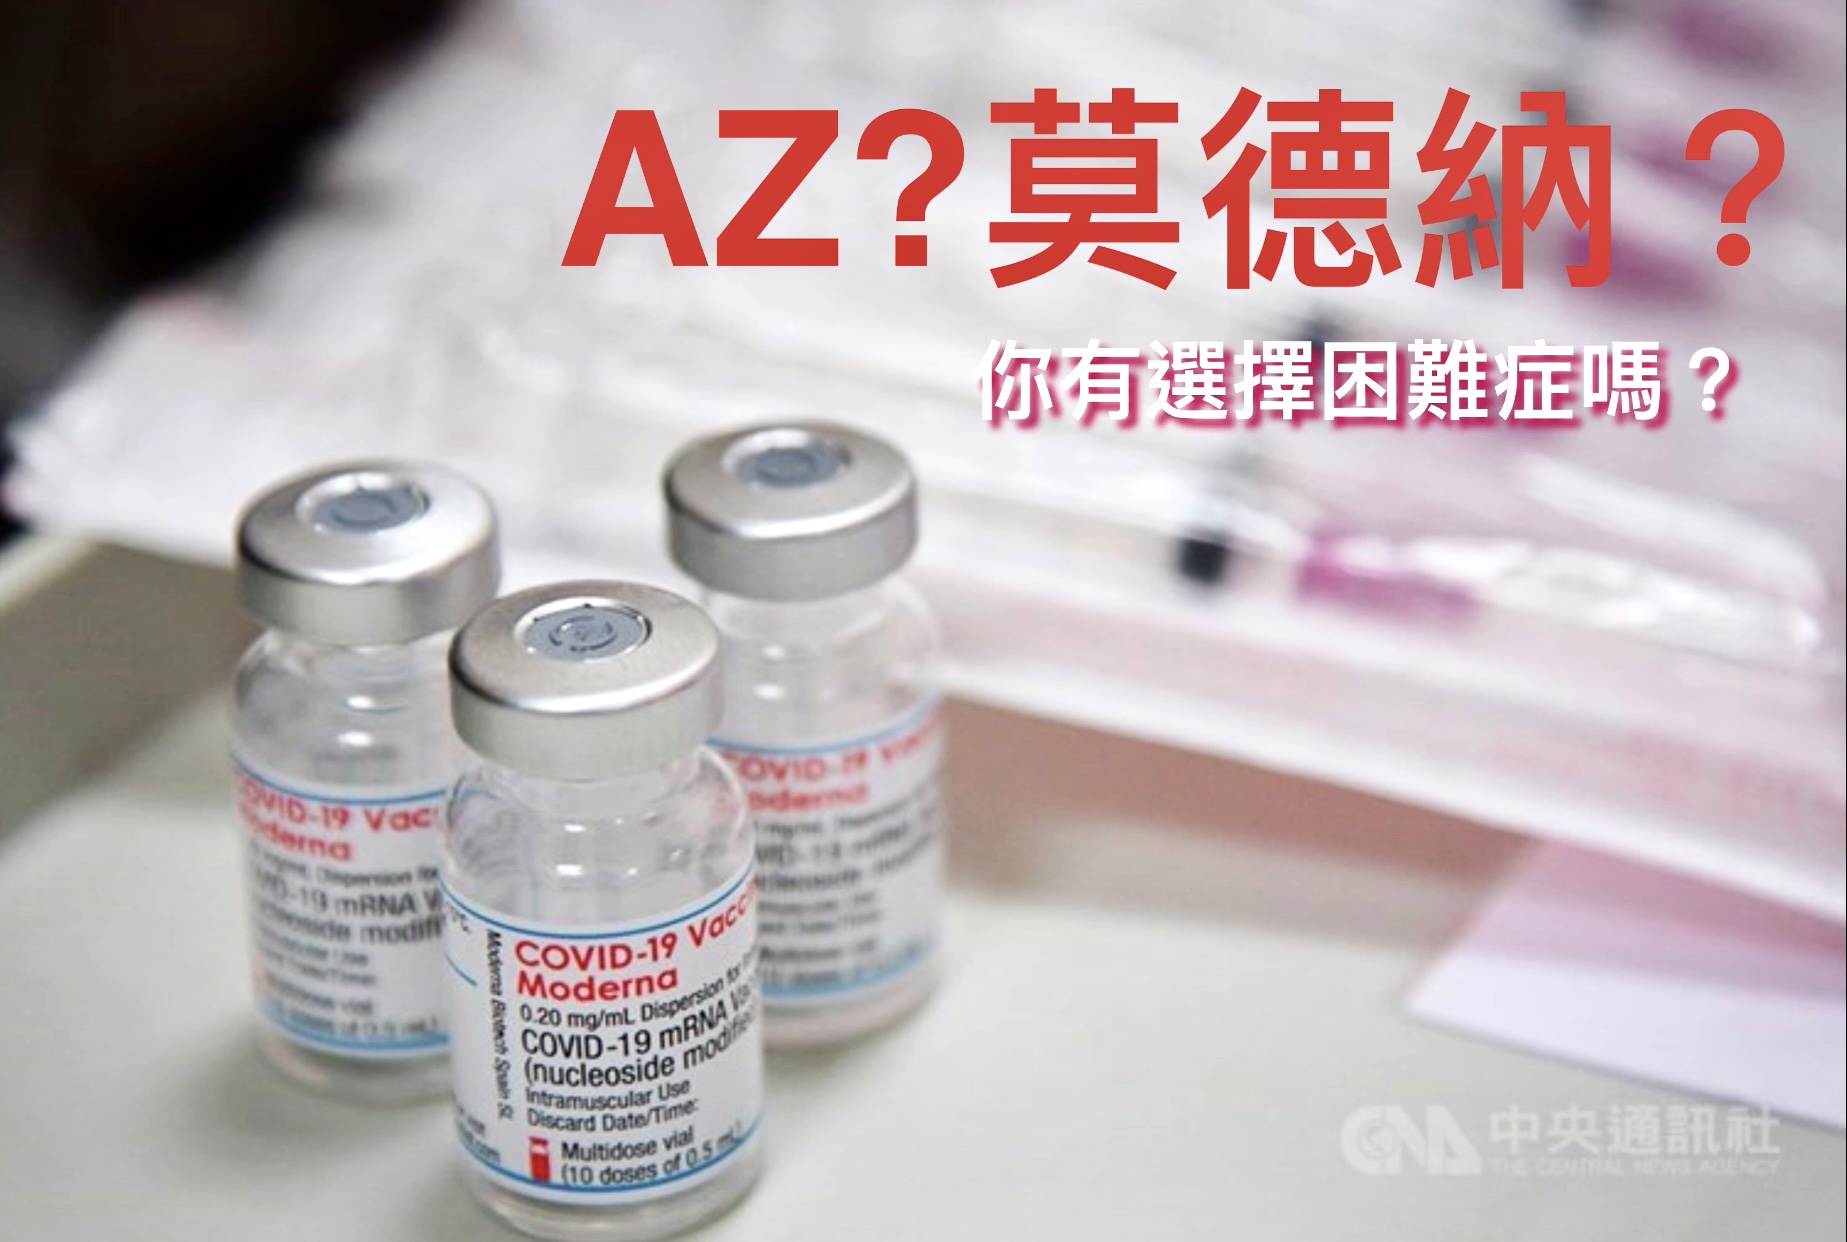 從歐盟疫苗政策看台灣的疫苗選擇症候群